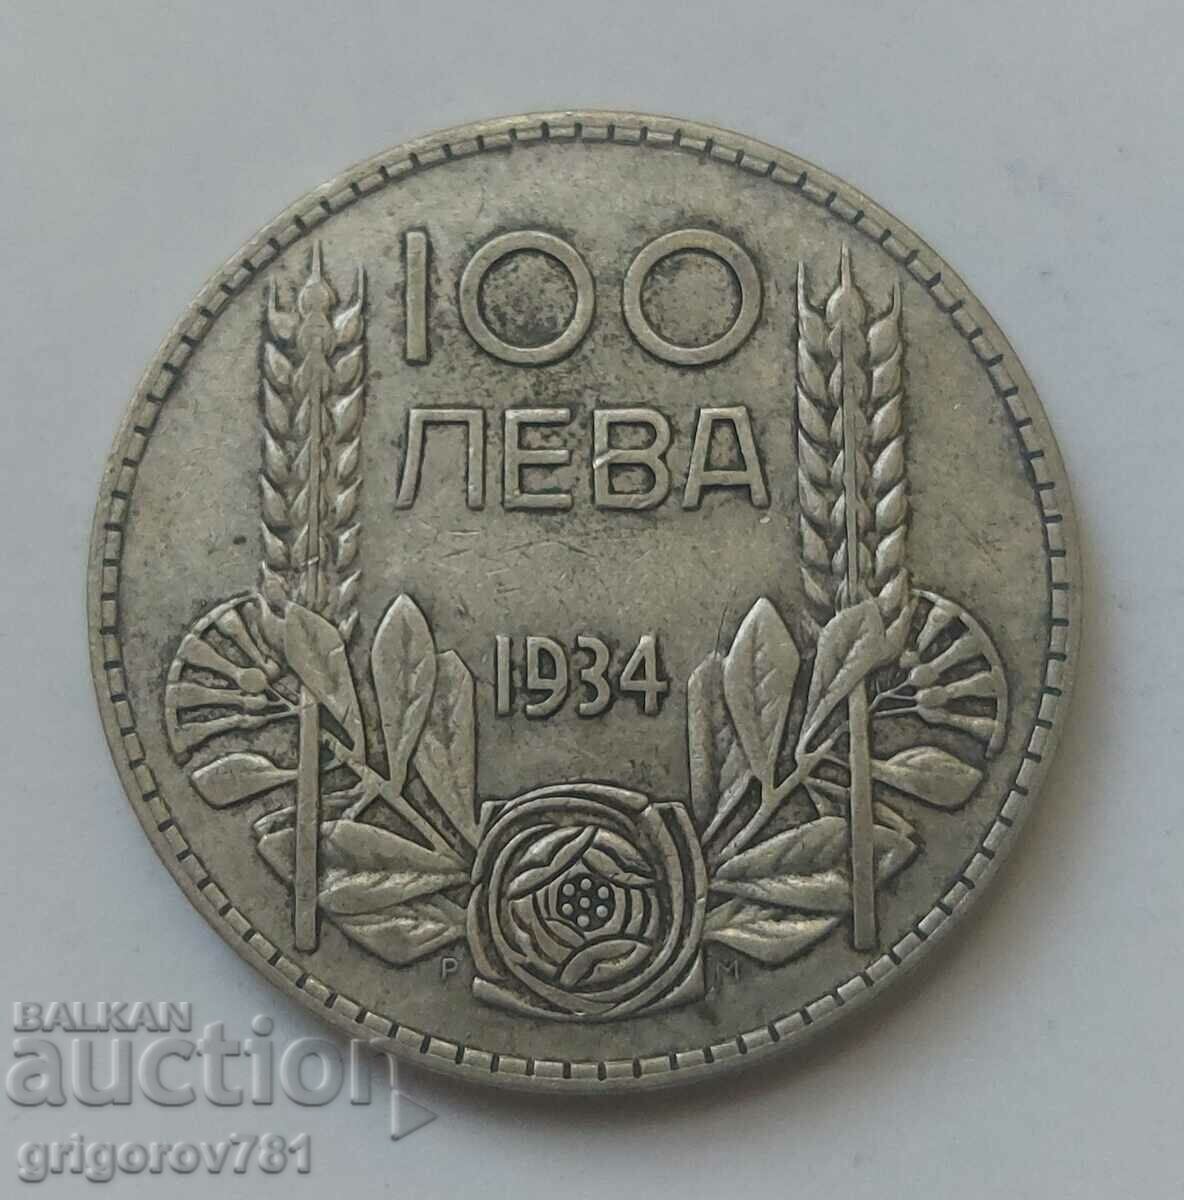 Ασήμι 100 λέβα Βουλγαρία 1934 - ασημένιο νόμισμα #71